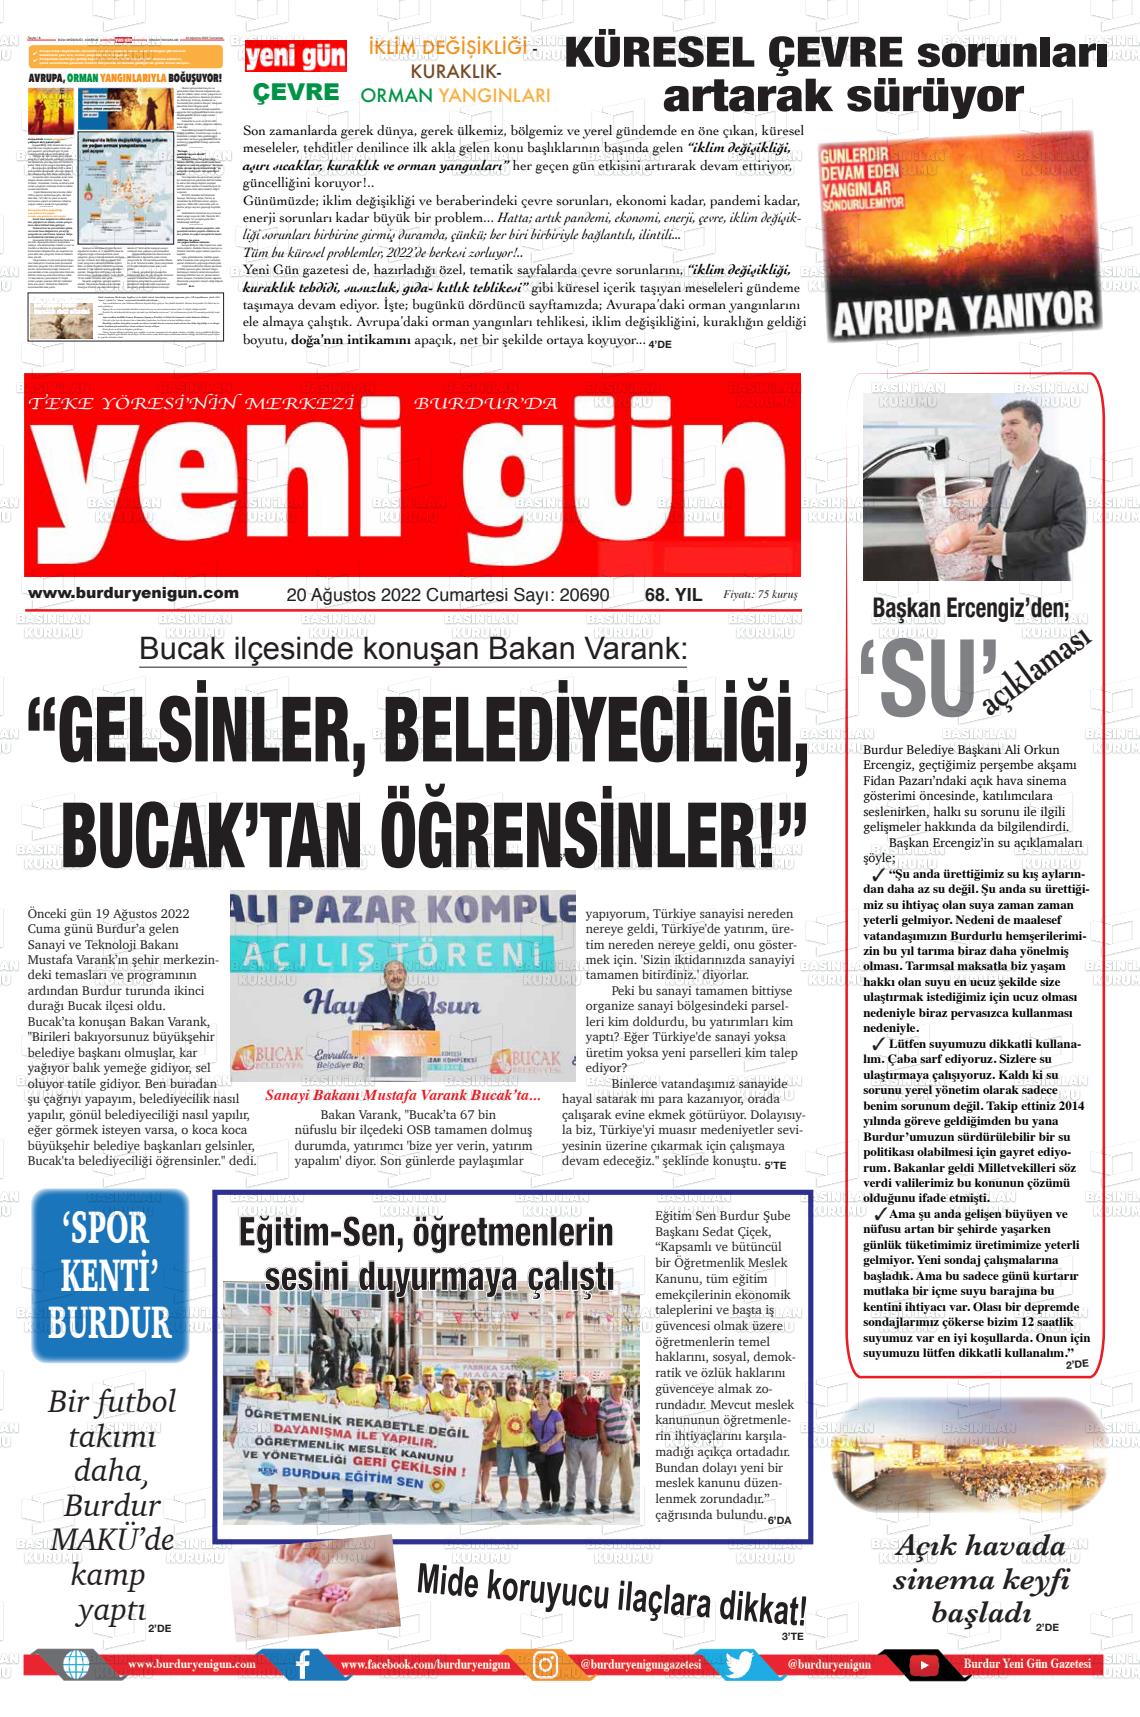 20 Ağustos 2022 Burdur Yeni Gün Gazete Manşeti